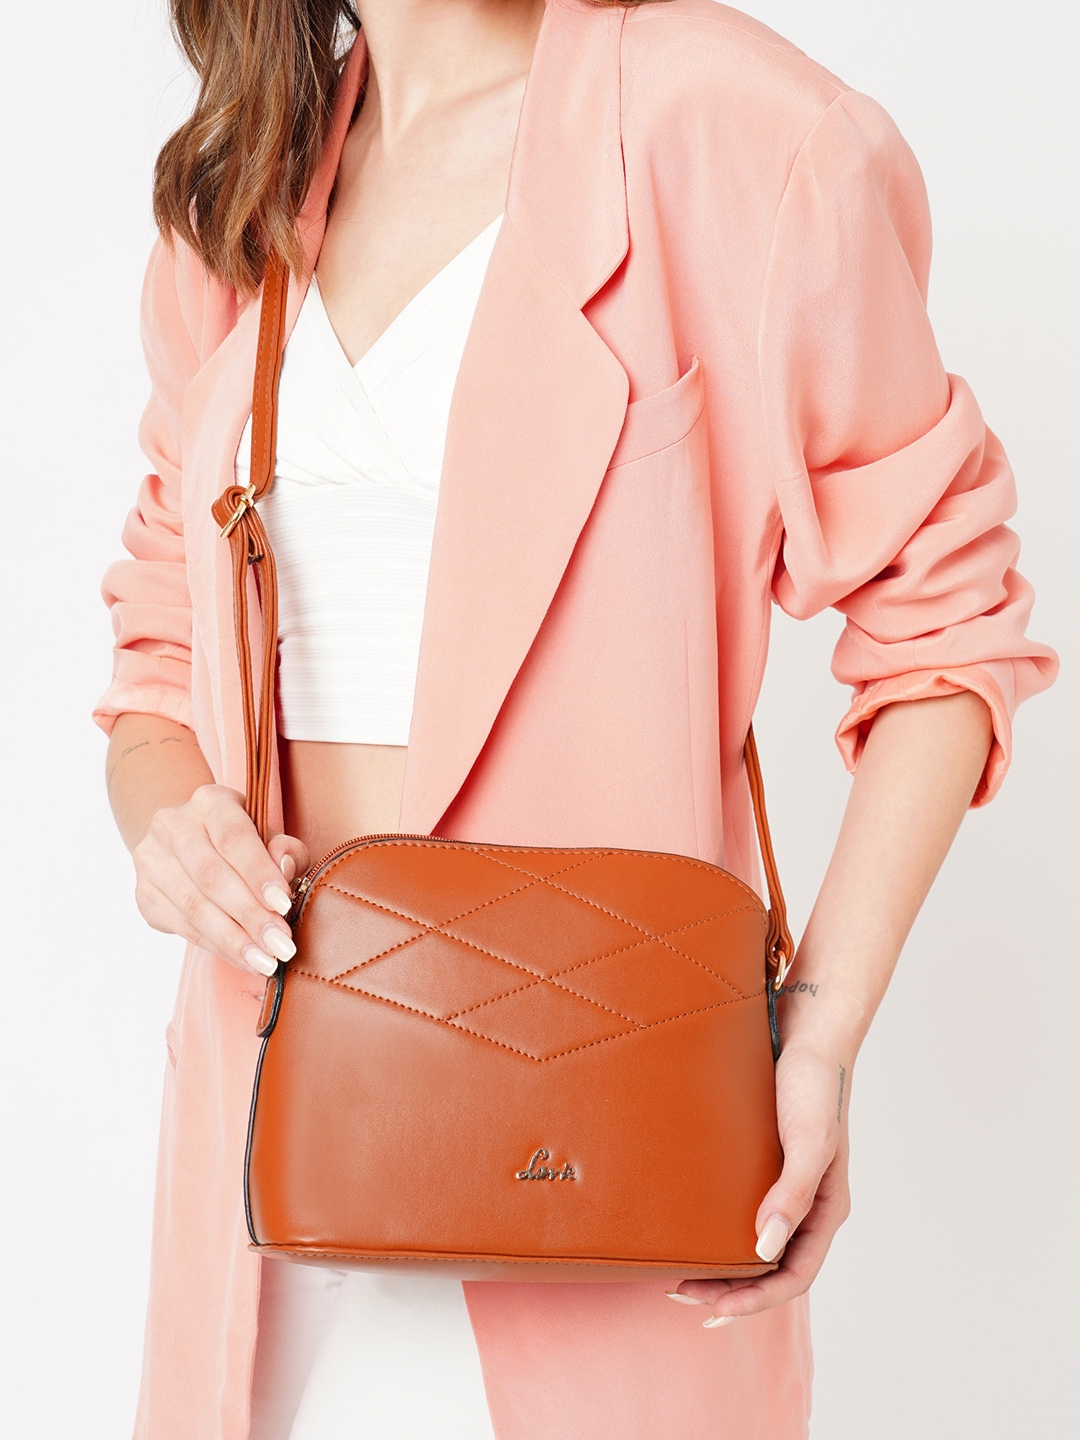 Lavie Women's Sling Bag (Tan) : : Fashion